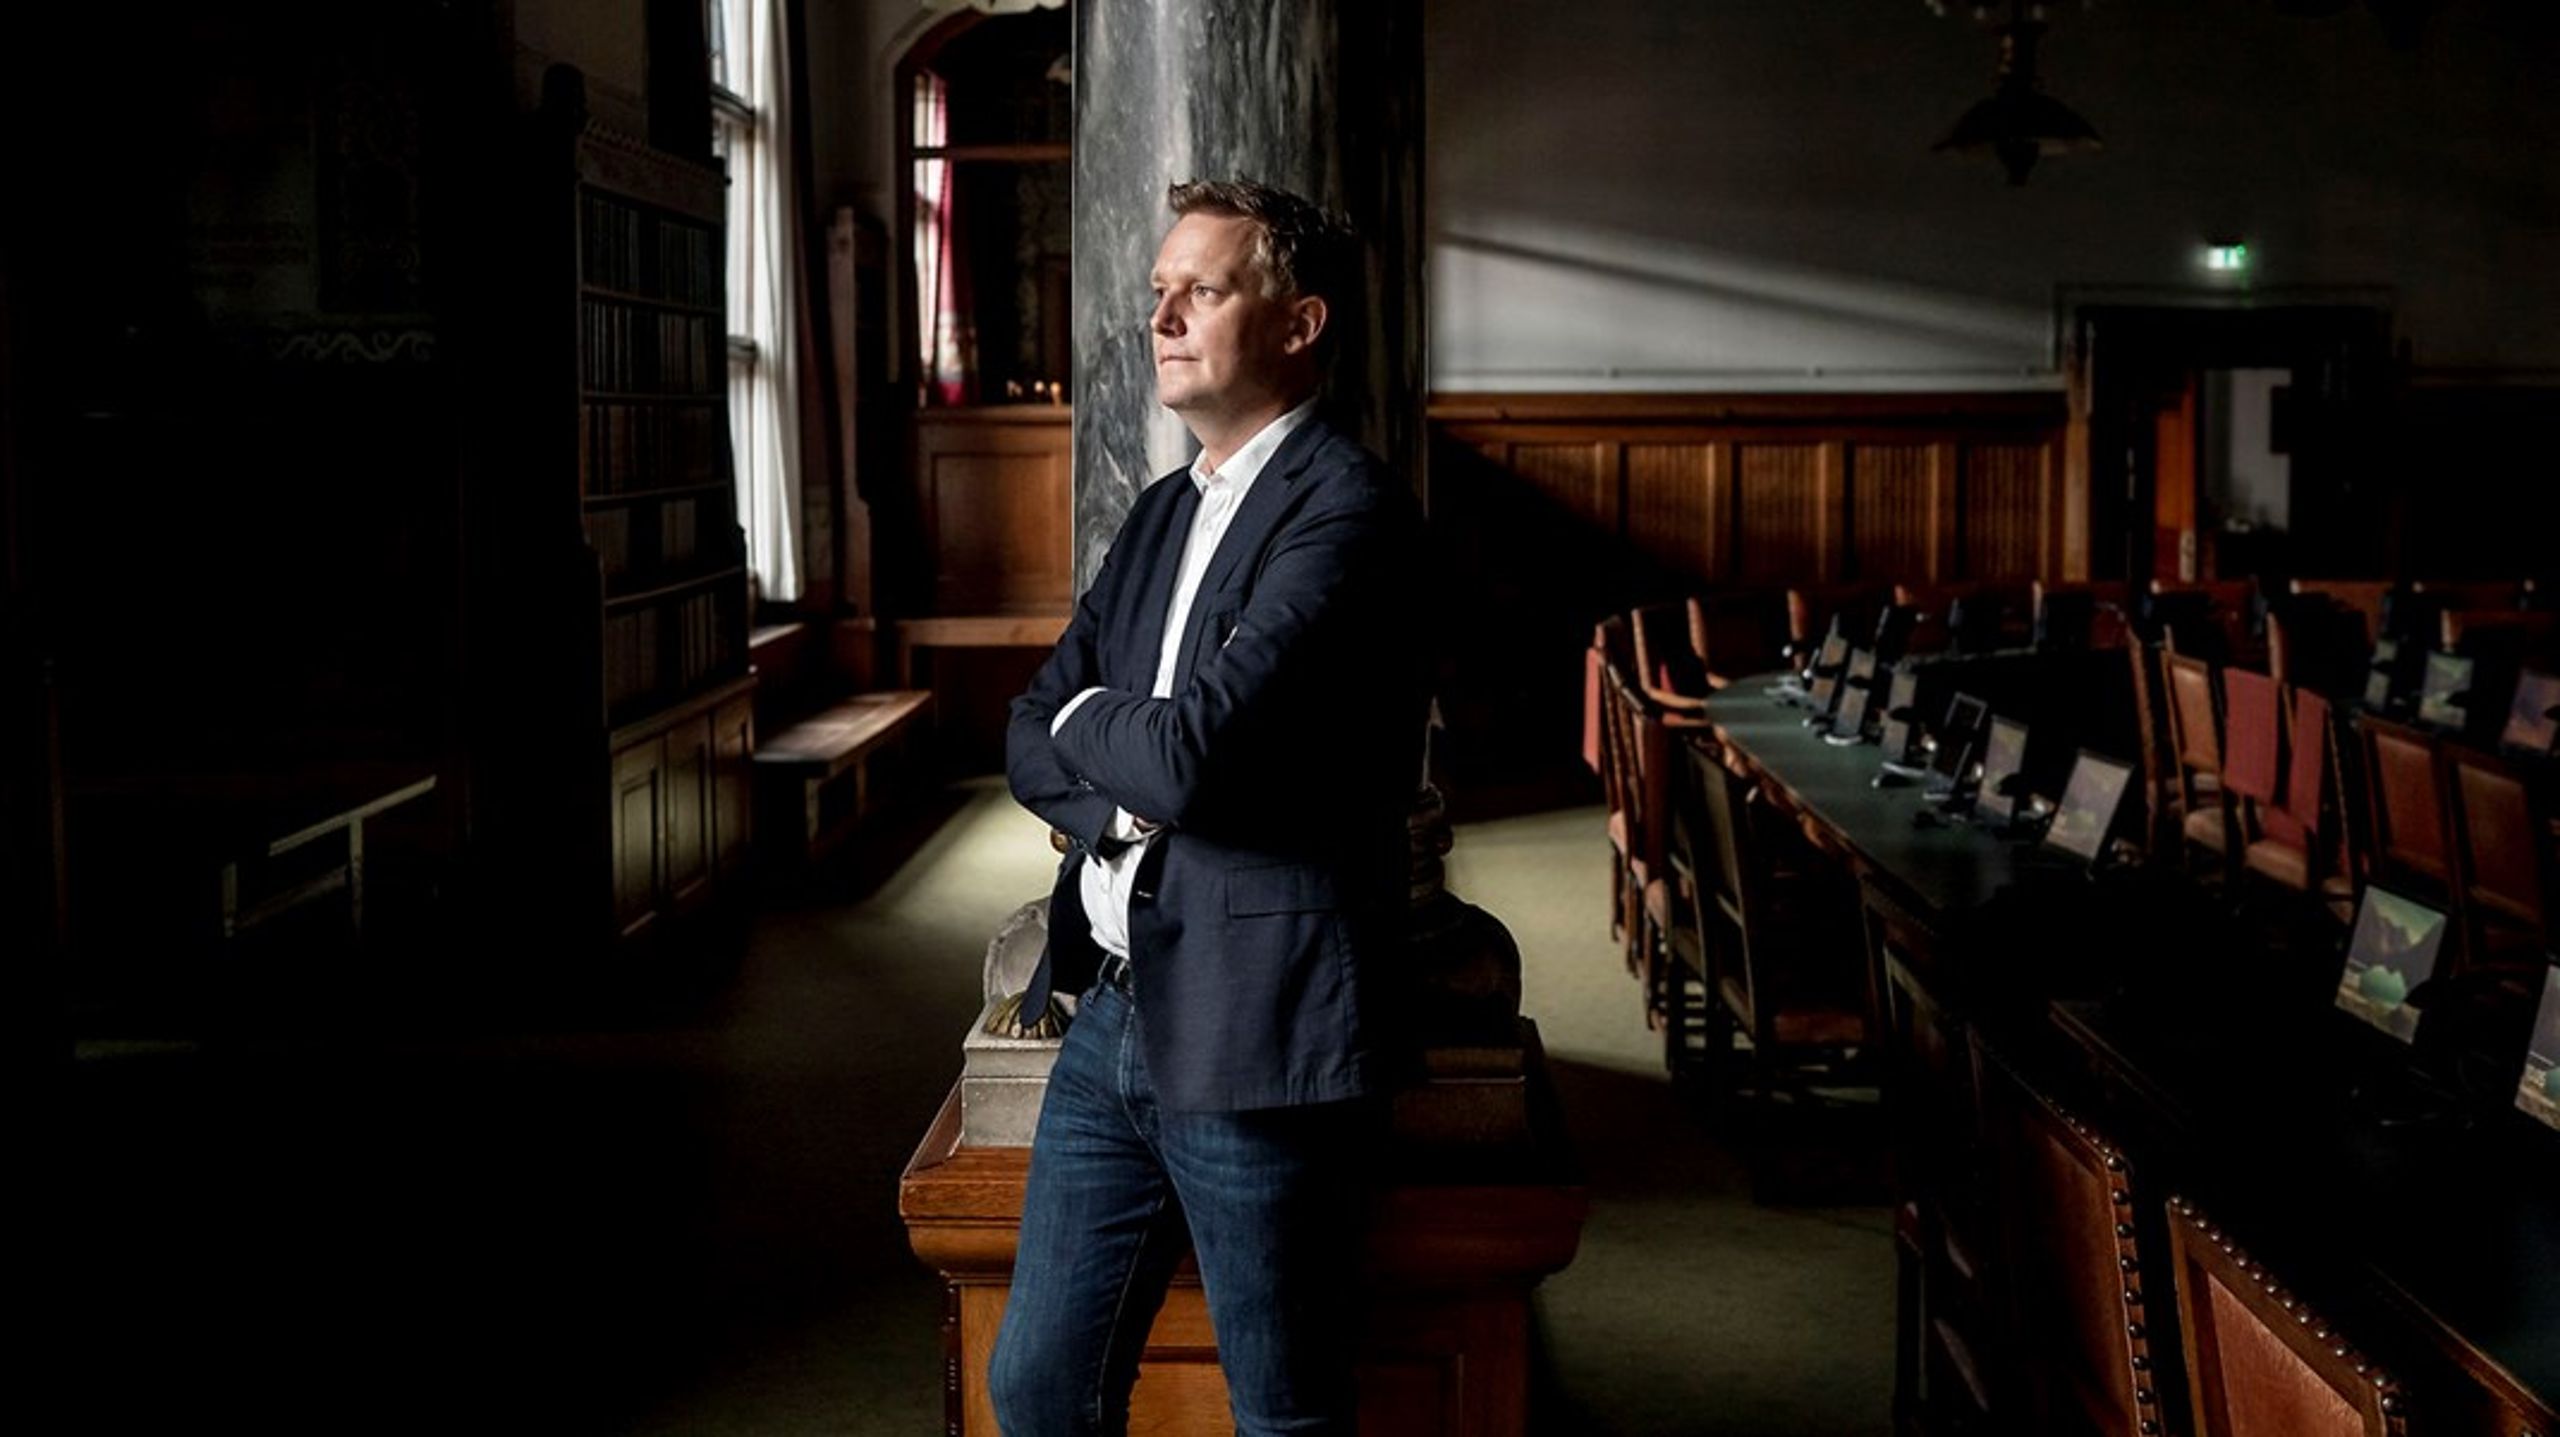 Jens Kristian Lütken er hårdtarbejdende og skarp, lyder ét af skudsmålene om Københavns nye beskæftigelses- og integrationsborgmester.